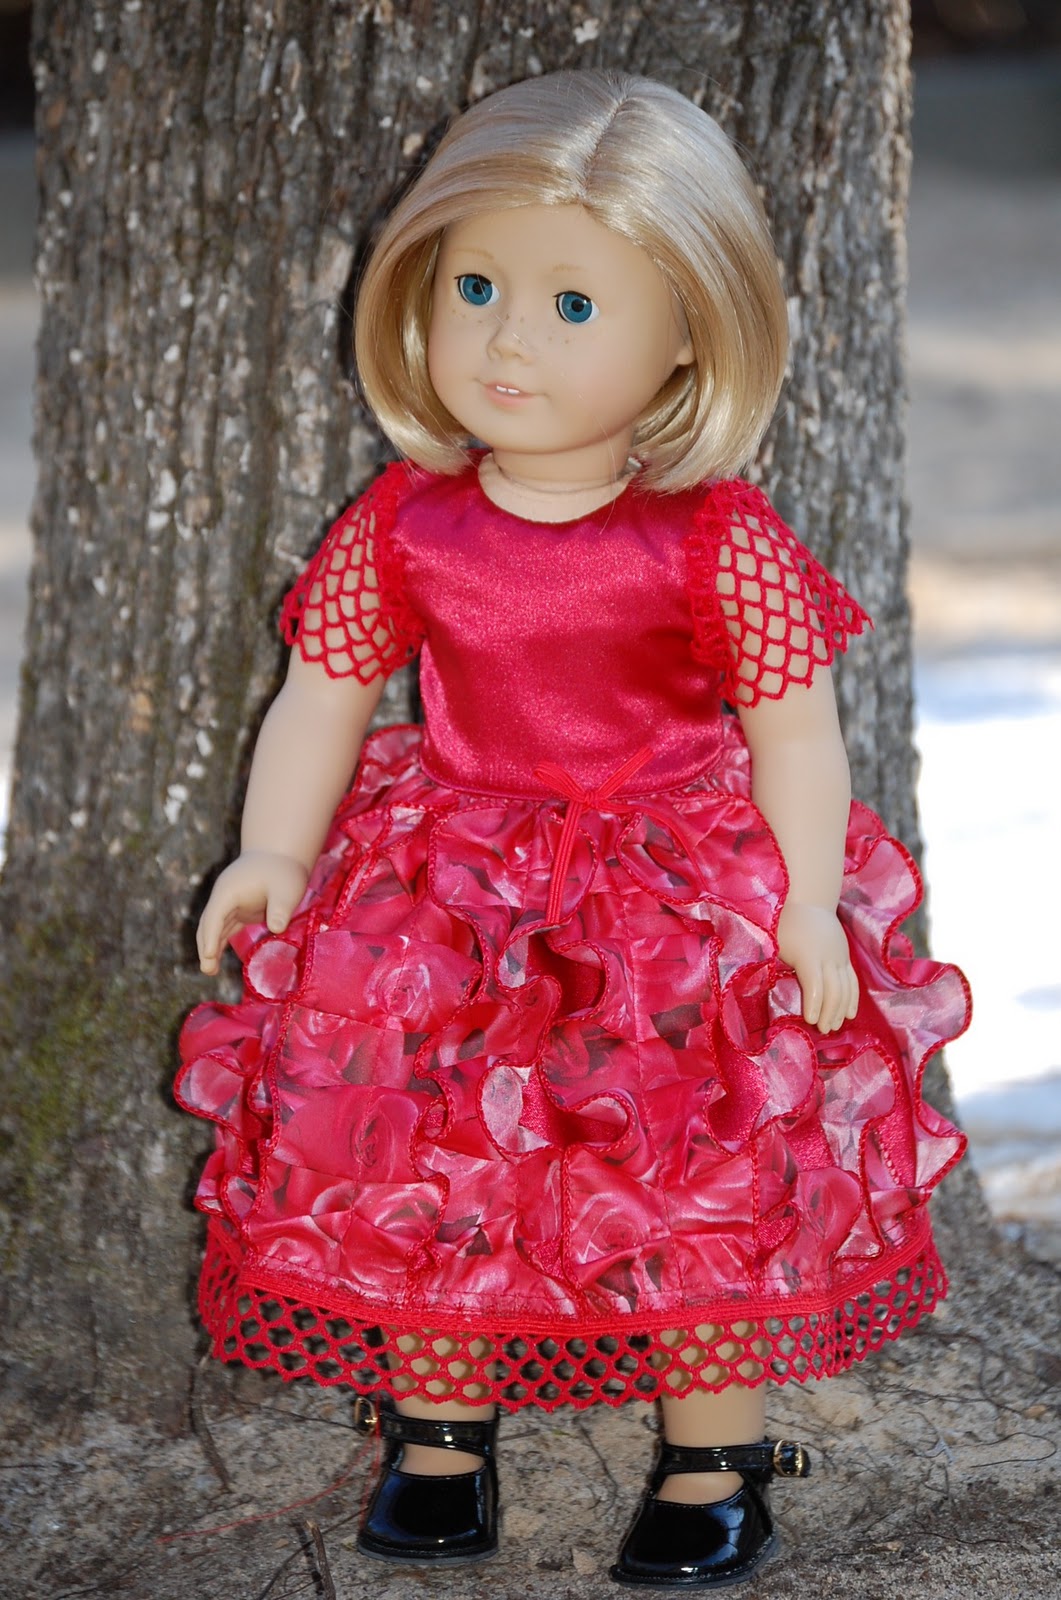 Dolls World: More dresses for girls.